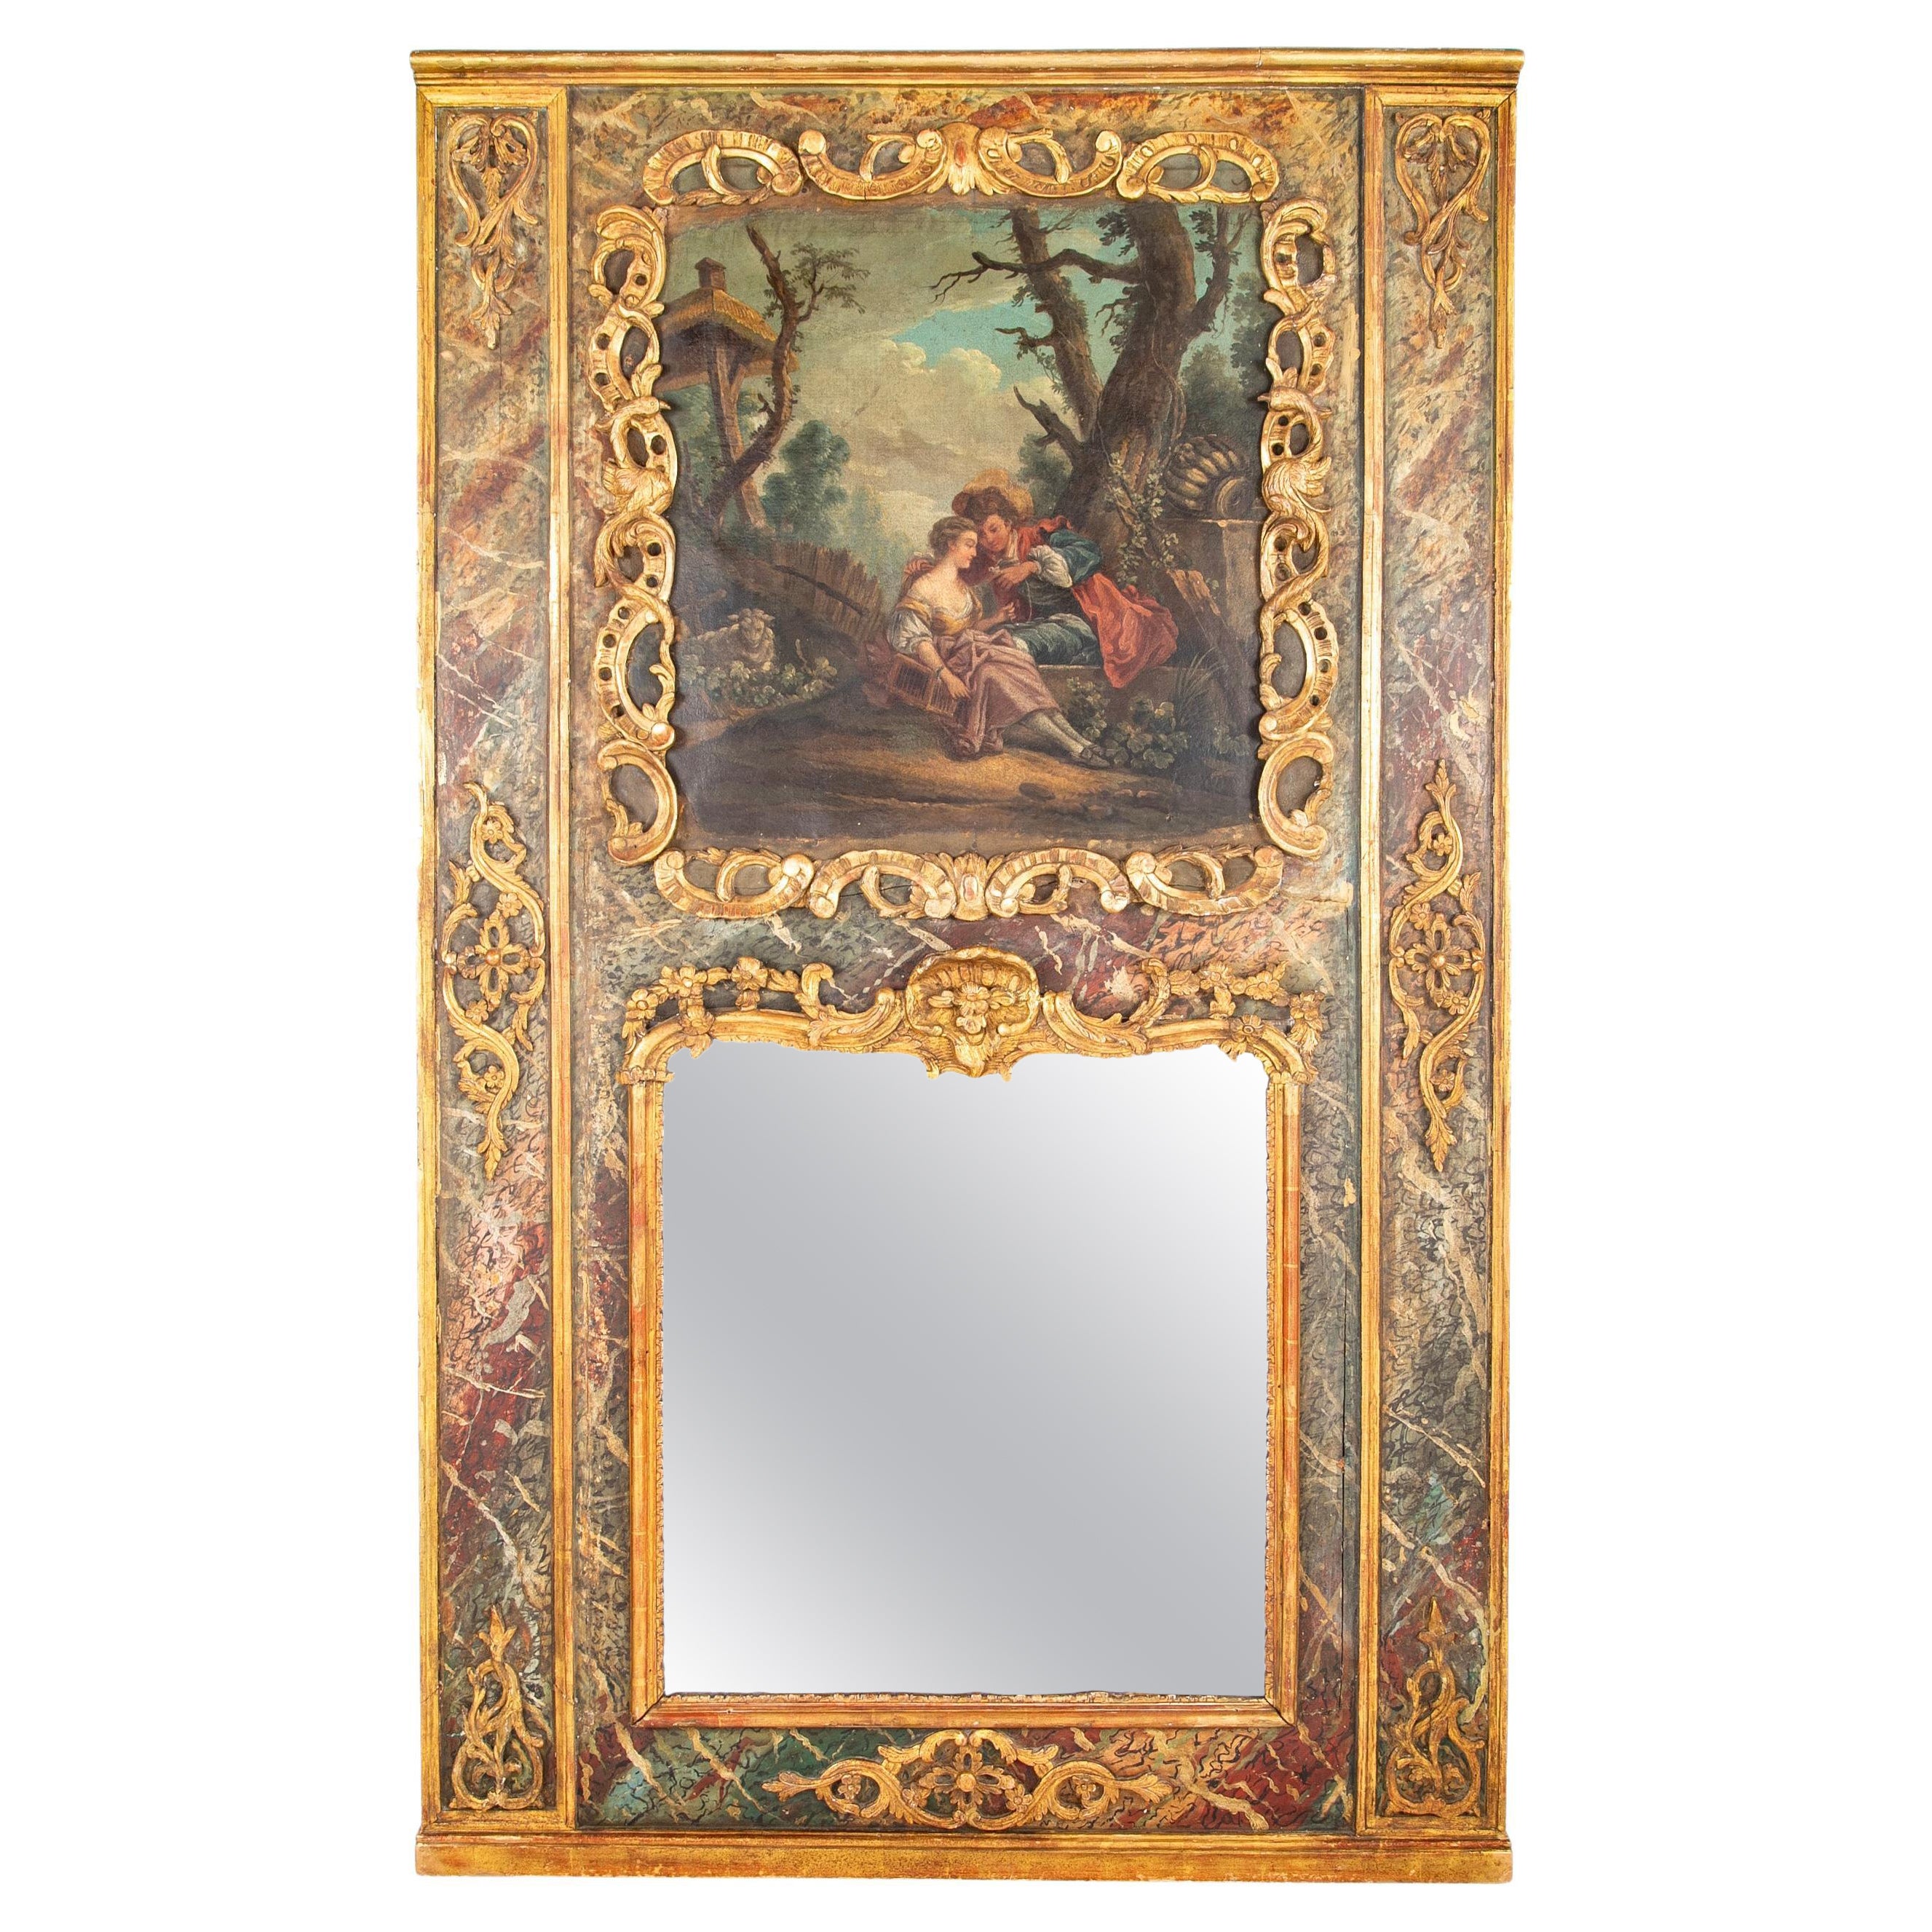 Miroir Trumeau français de la fin du XVIIIe siècle avec peinture romantique